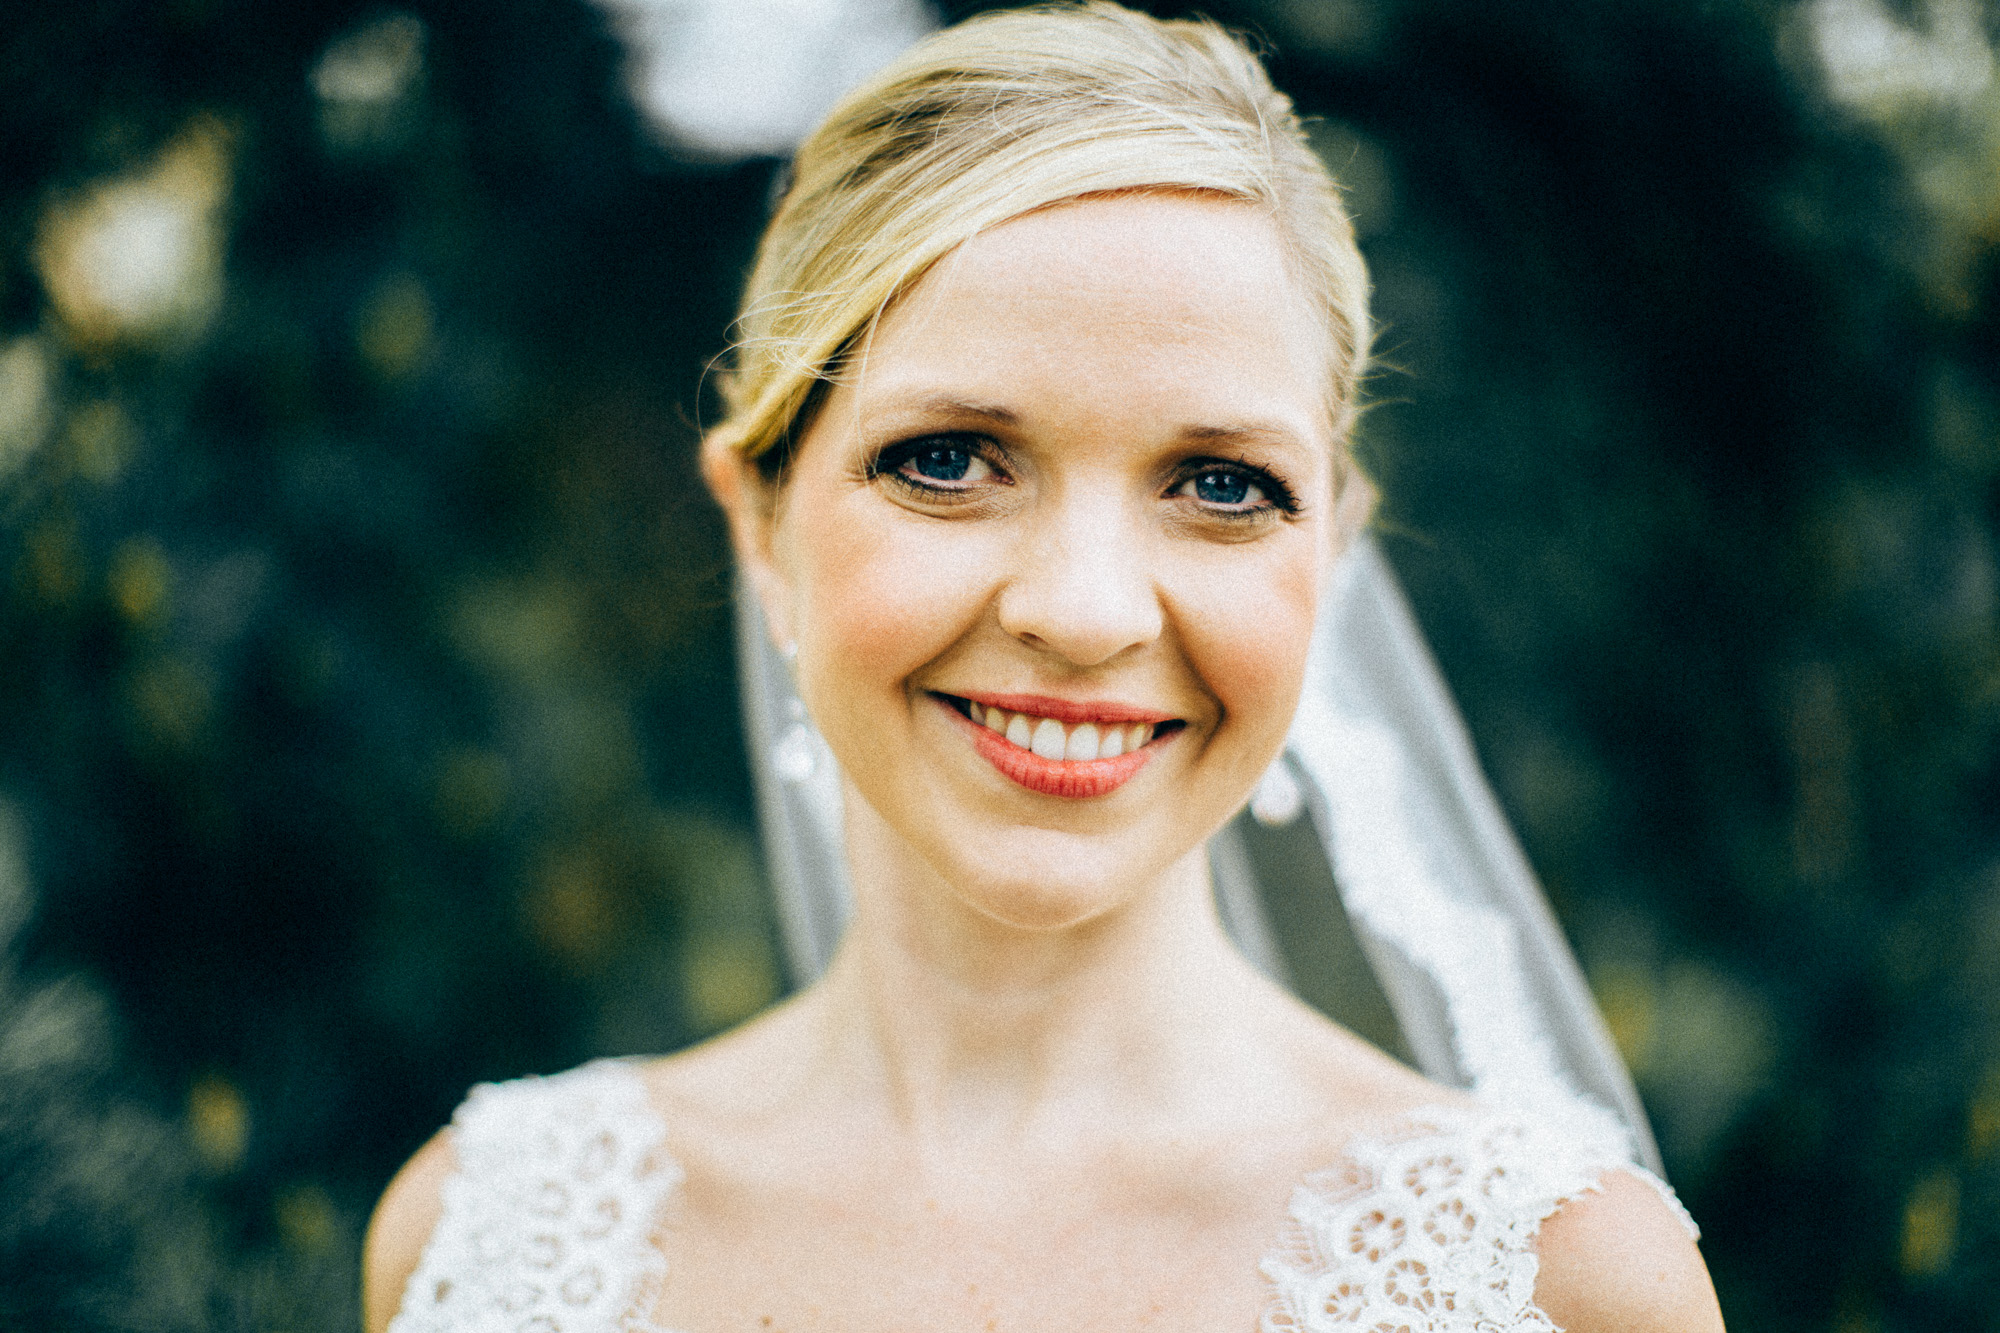 Lawrence, Kansas Engagement & Wedding Photographer